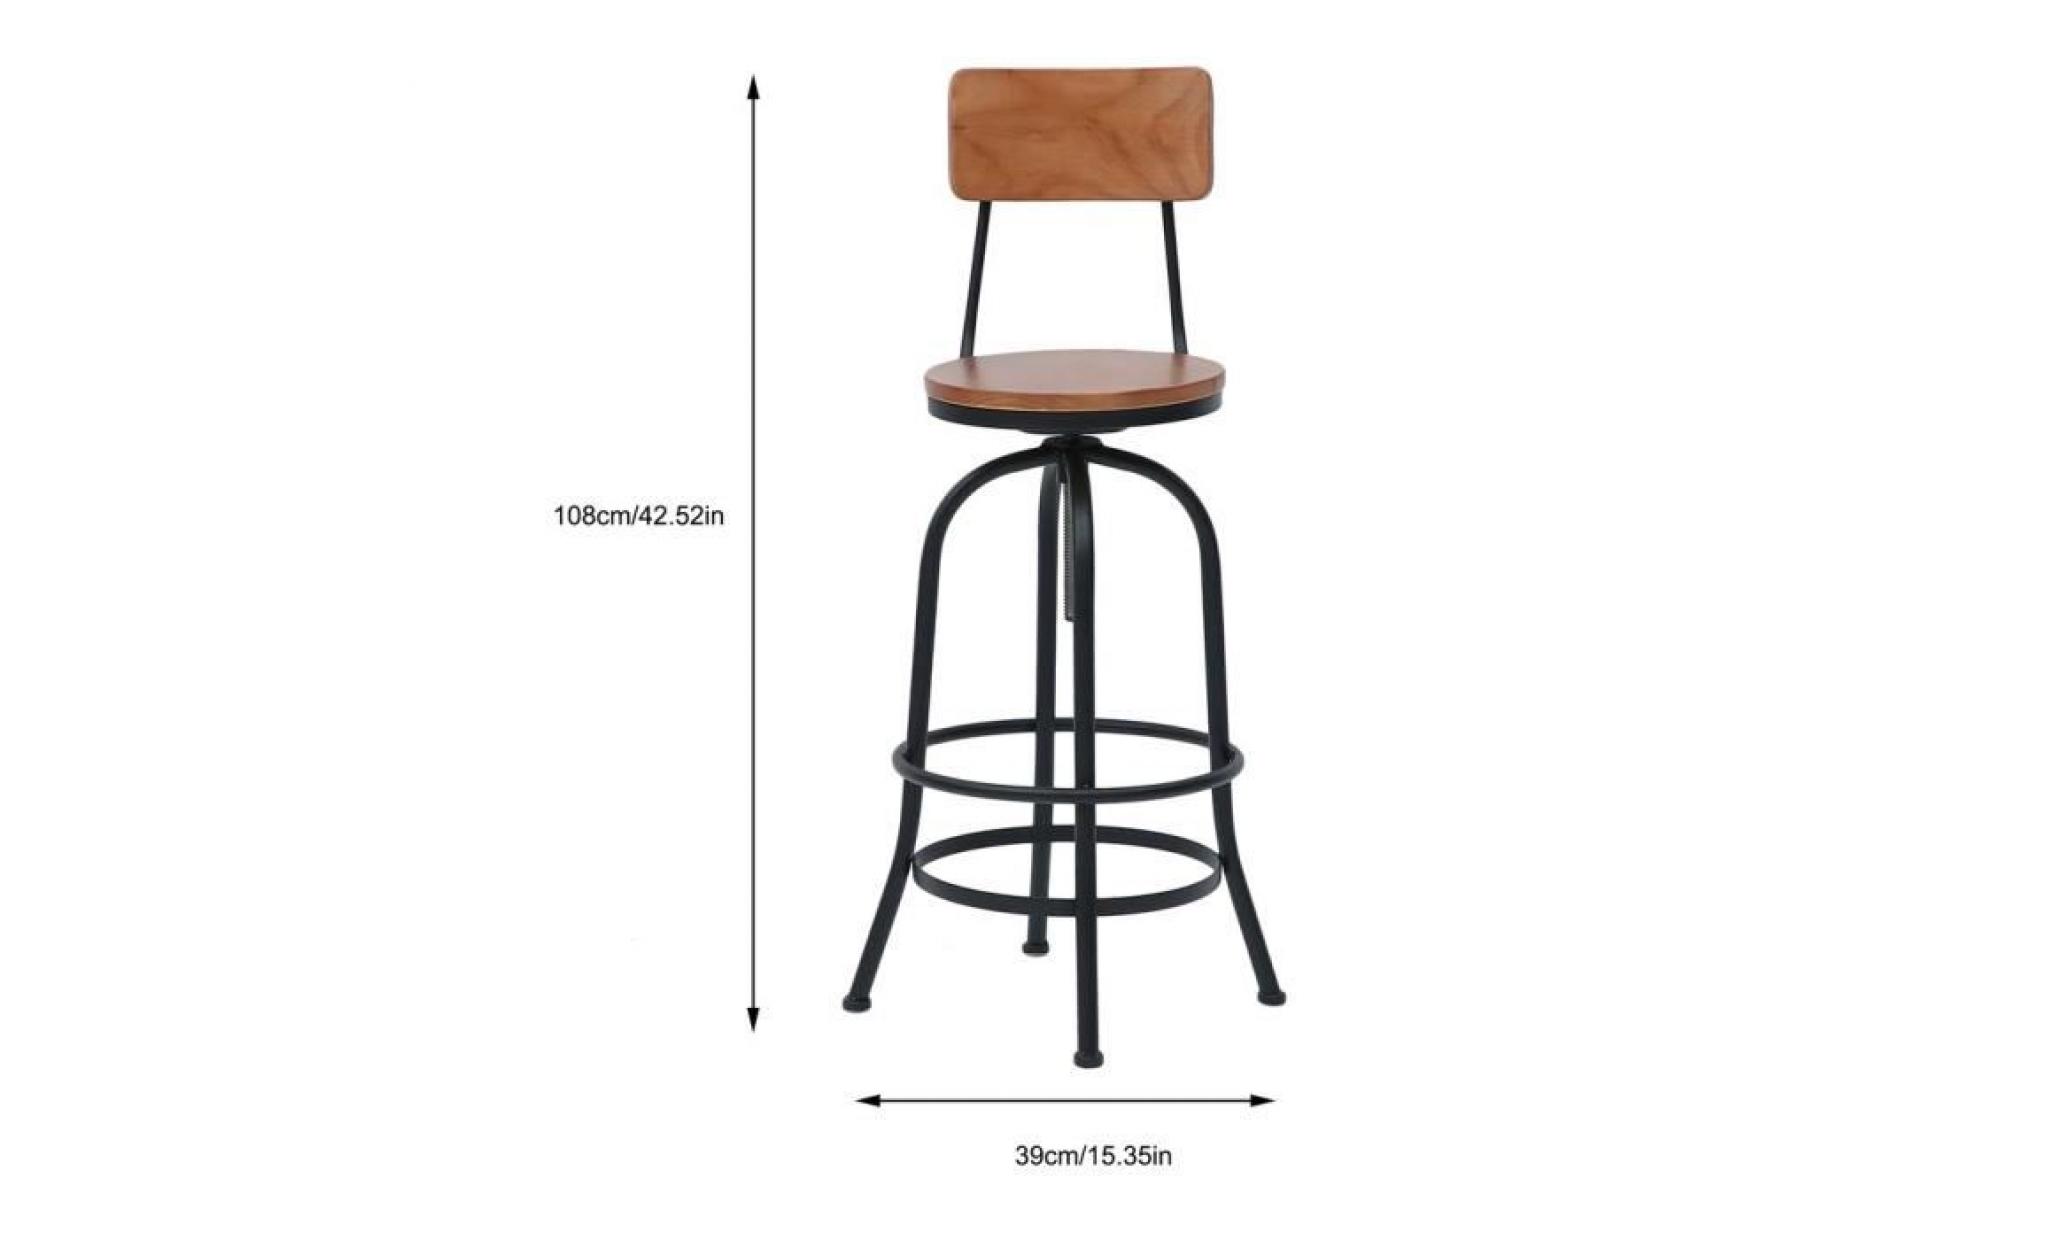 1 x tabouret de bar chaise ronde avec hauteur ajustable pour pub cafe pas cher